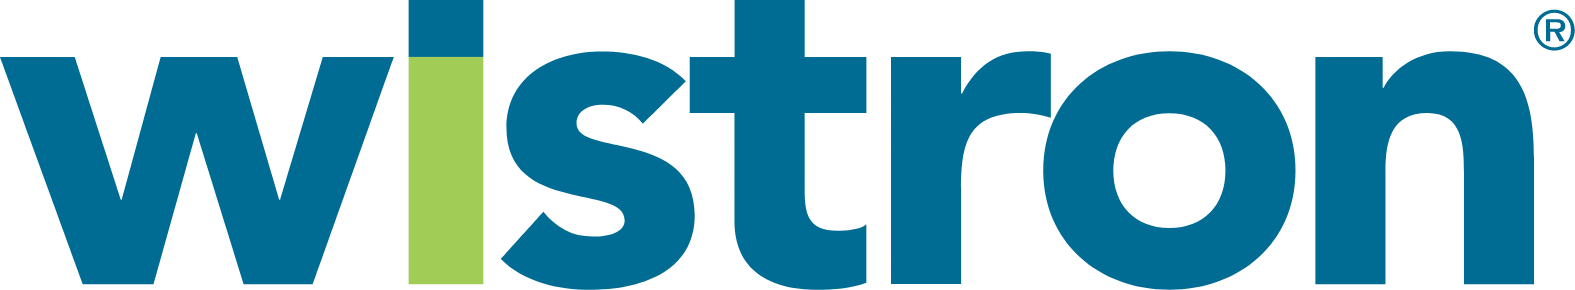 Wistron Corporation logo large (transparent PNG)